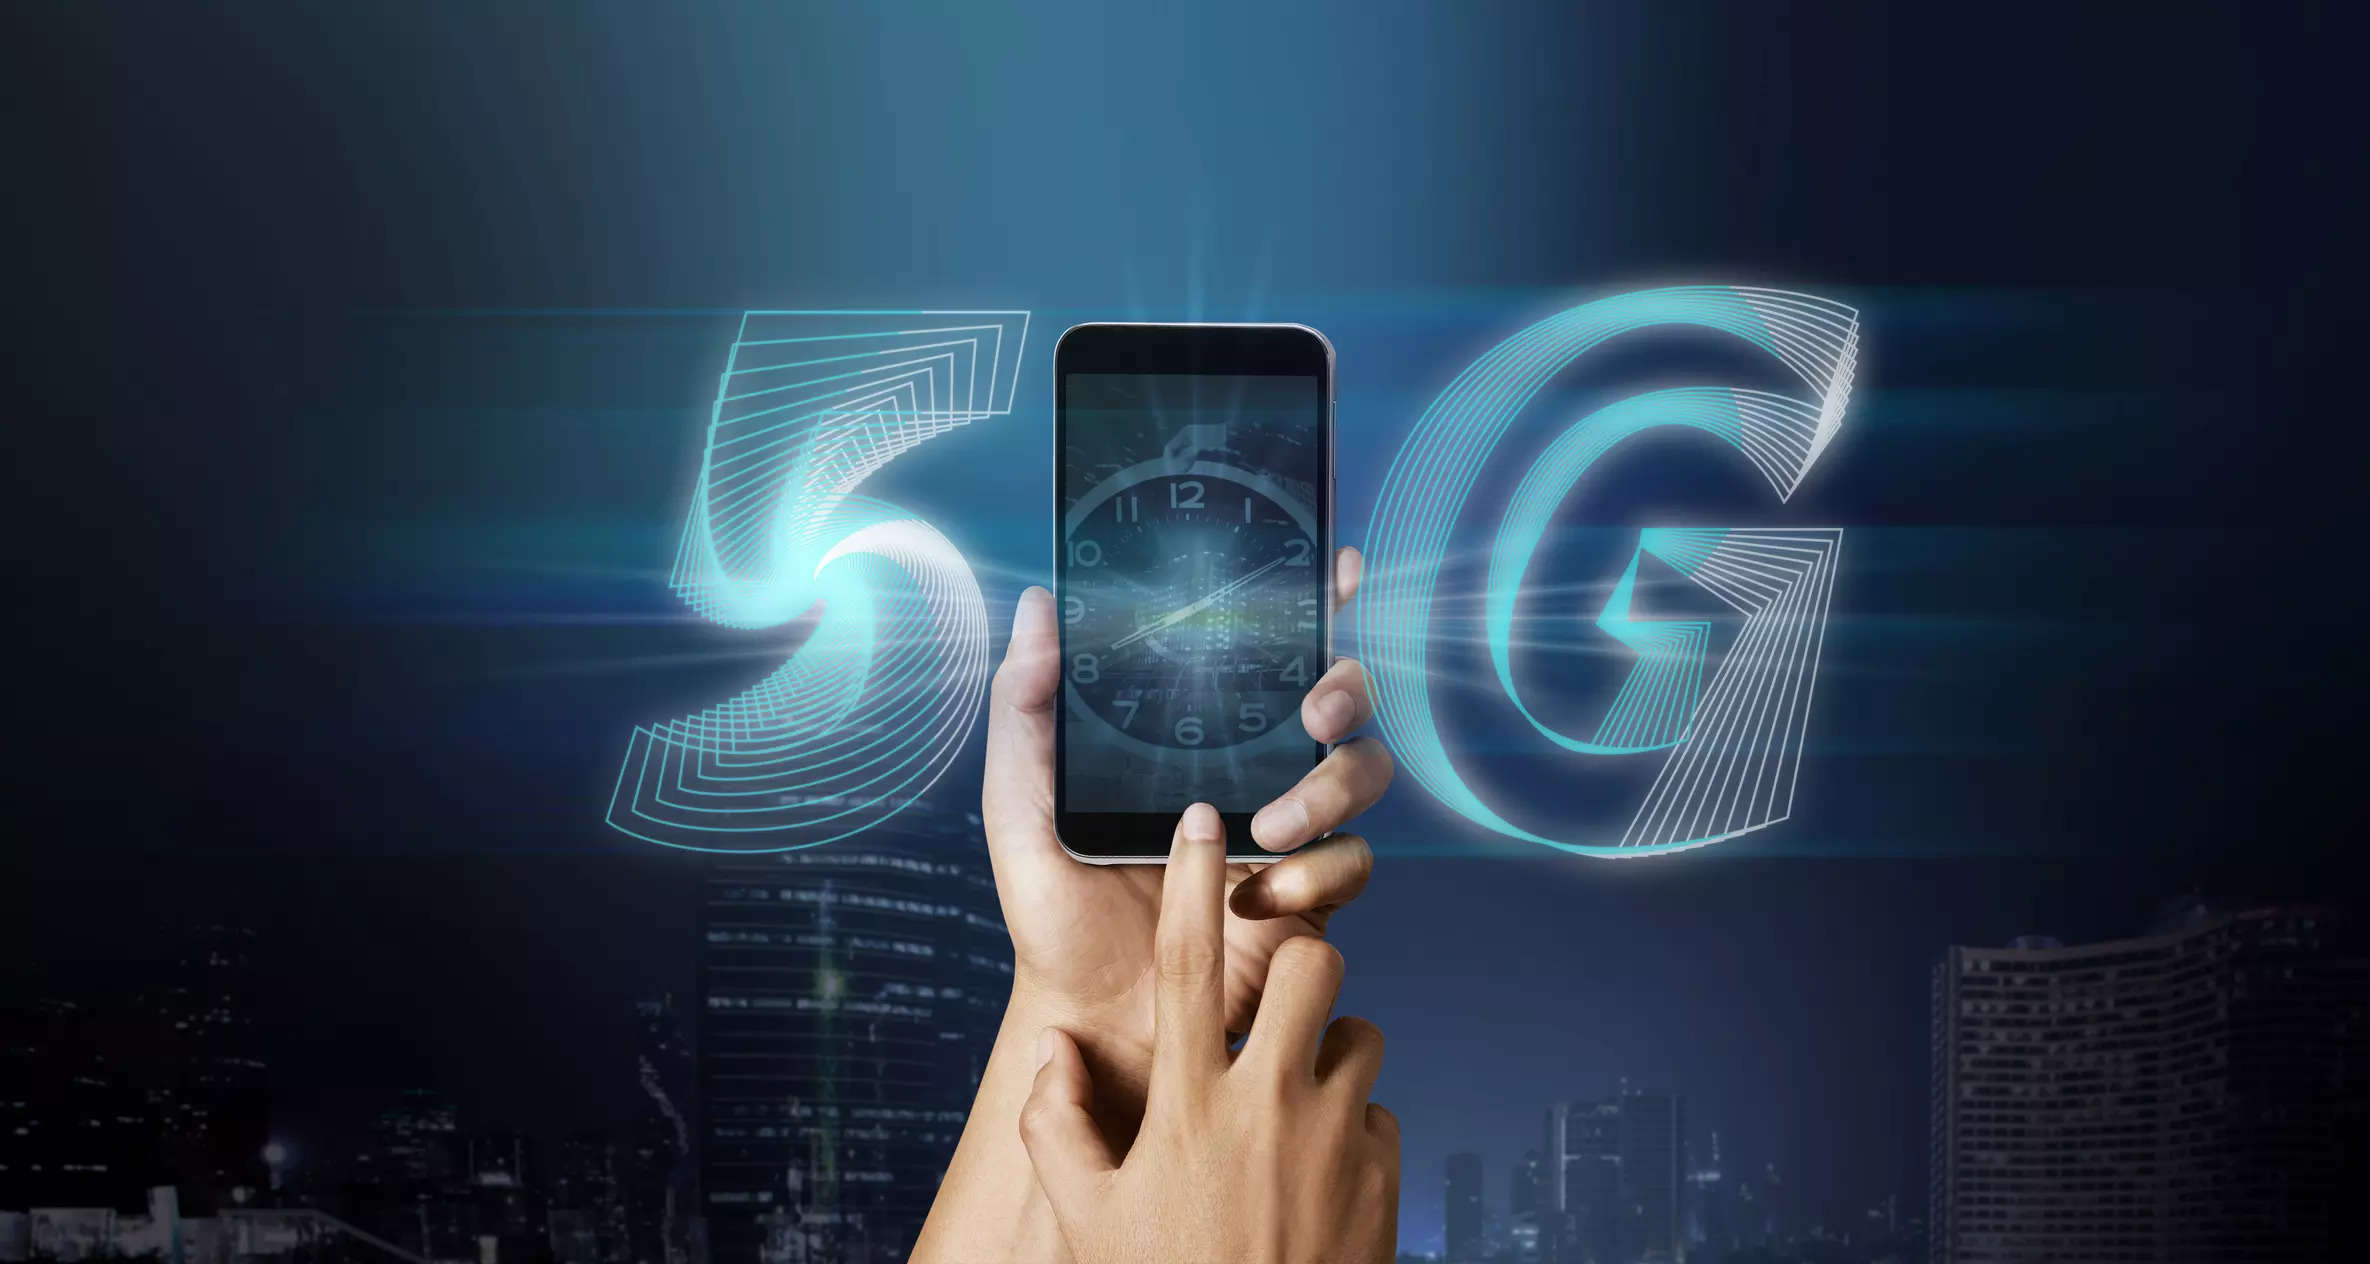 5G smartphones to surpass 4G in 2023